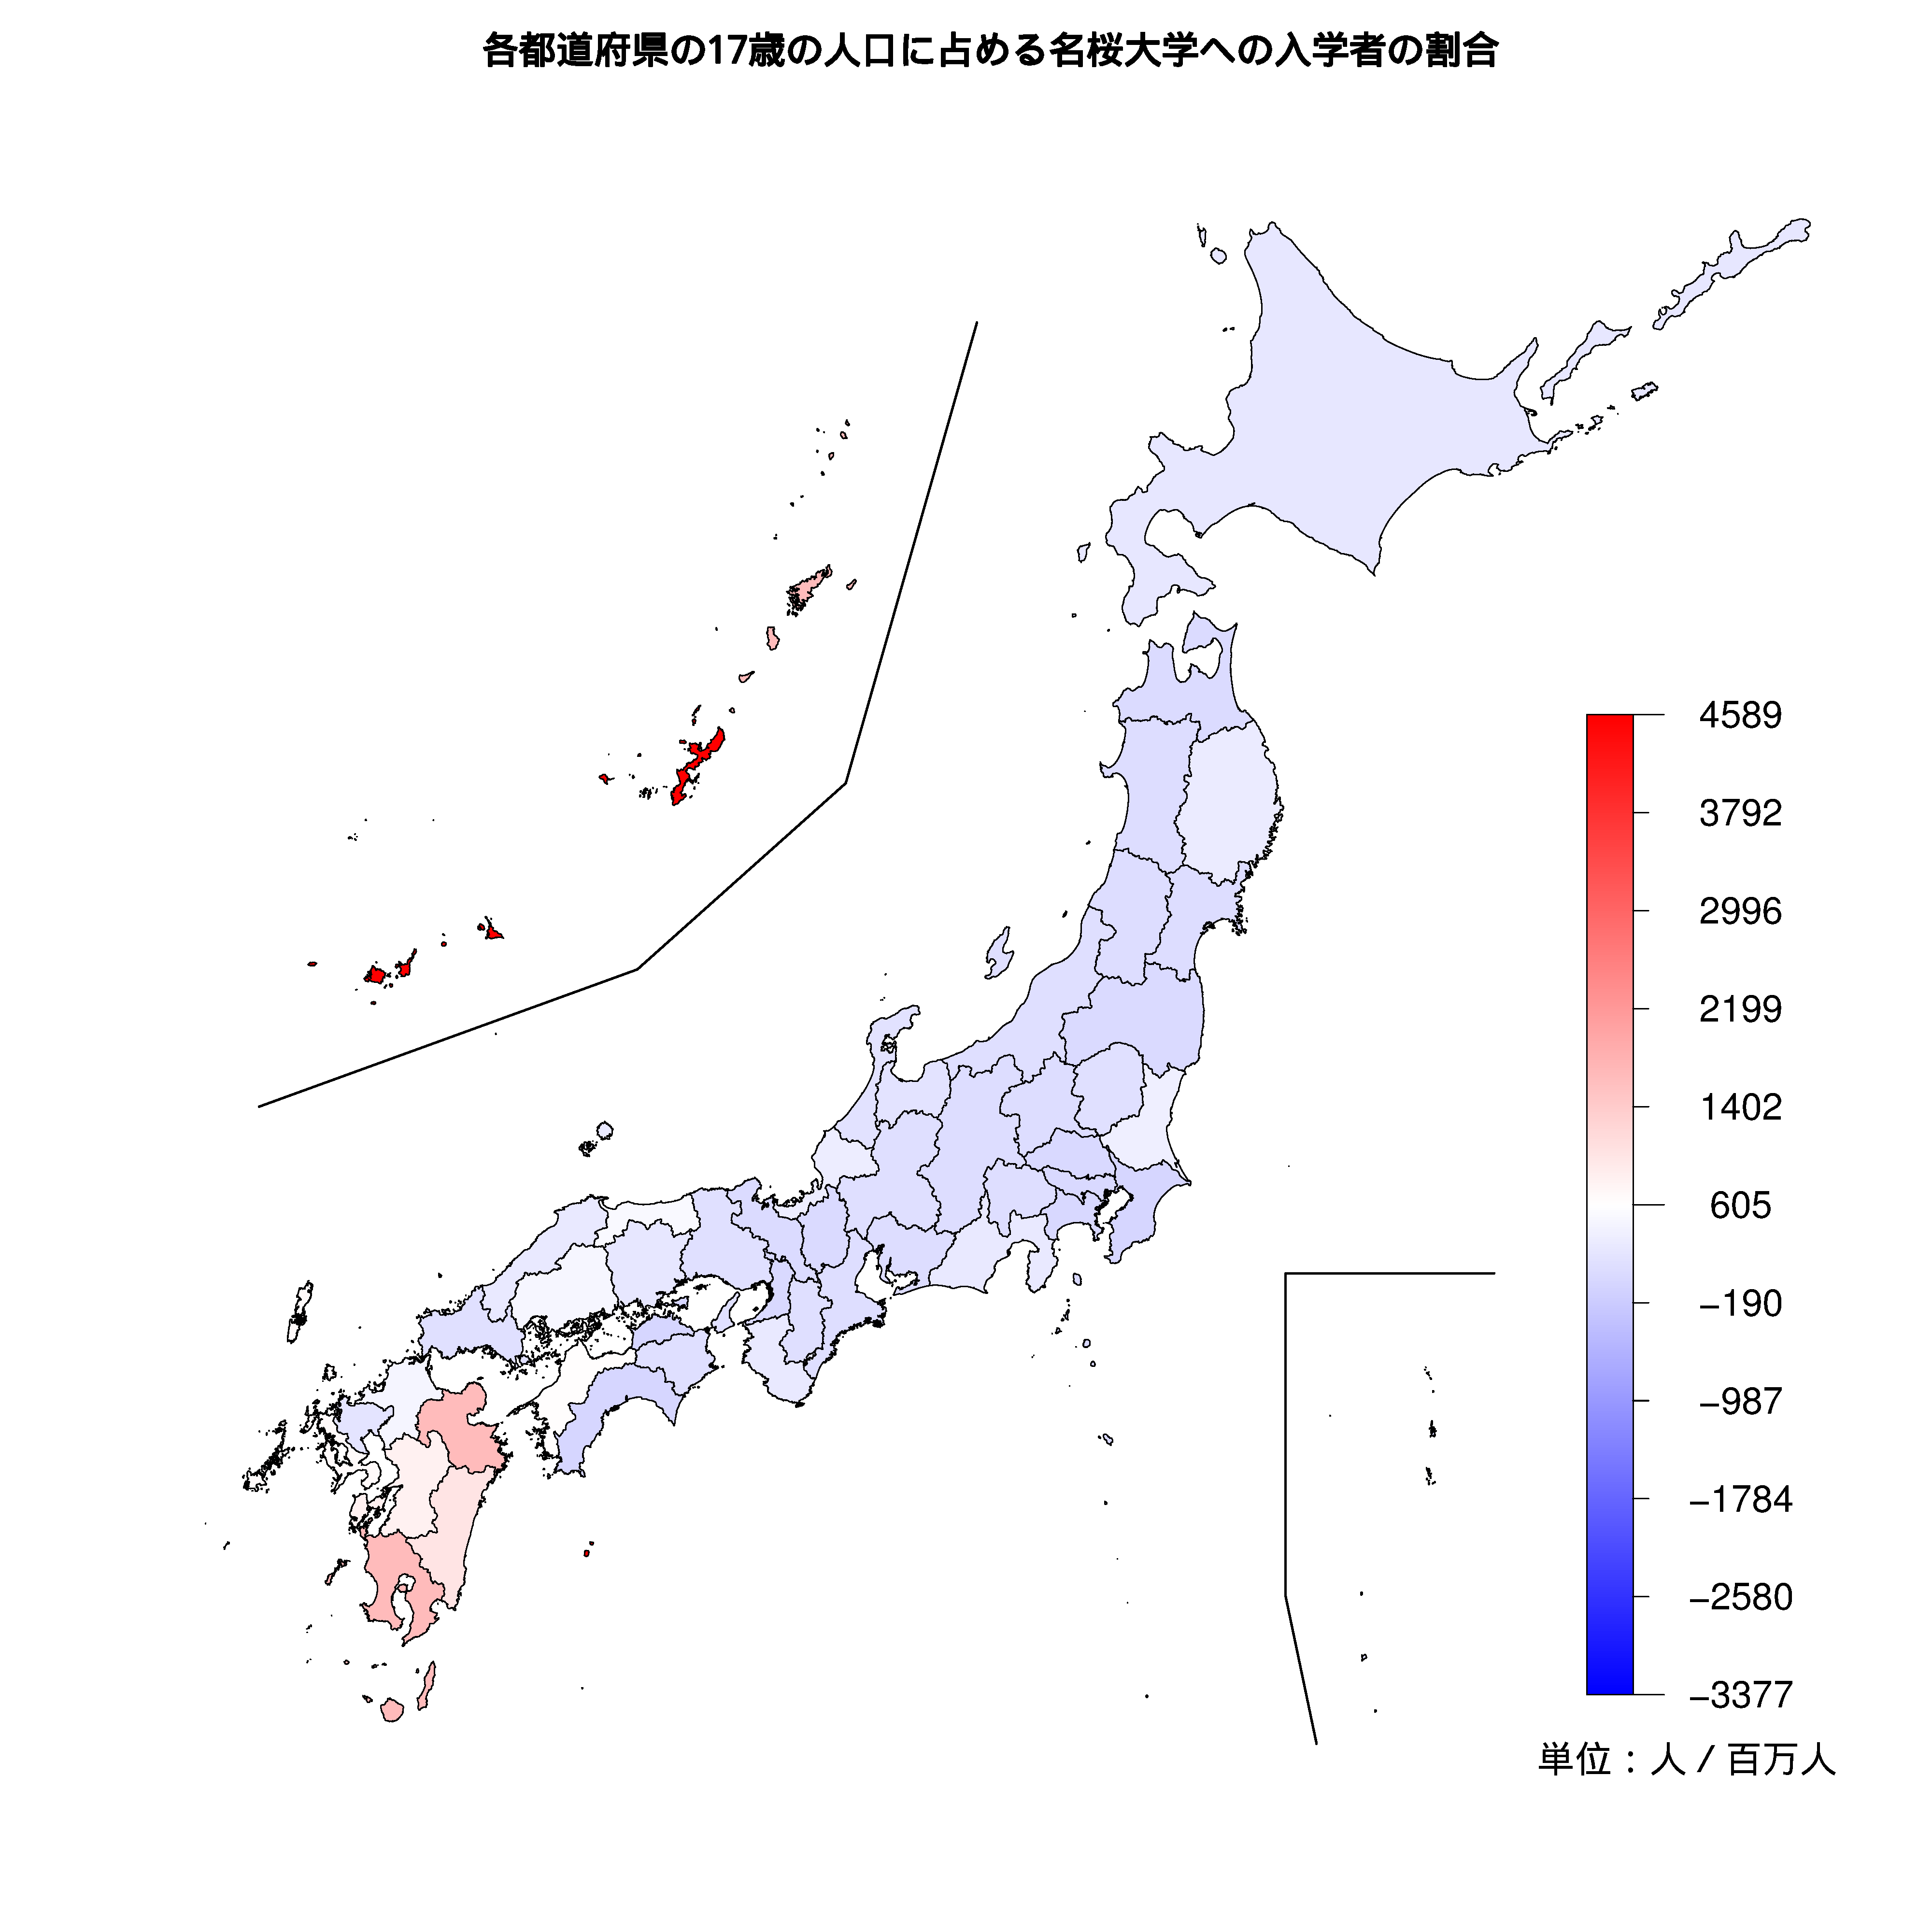 名桜大学への入学者が多い都道府県の色分け地図